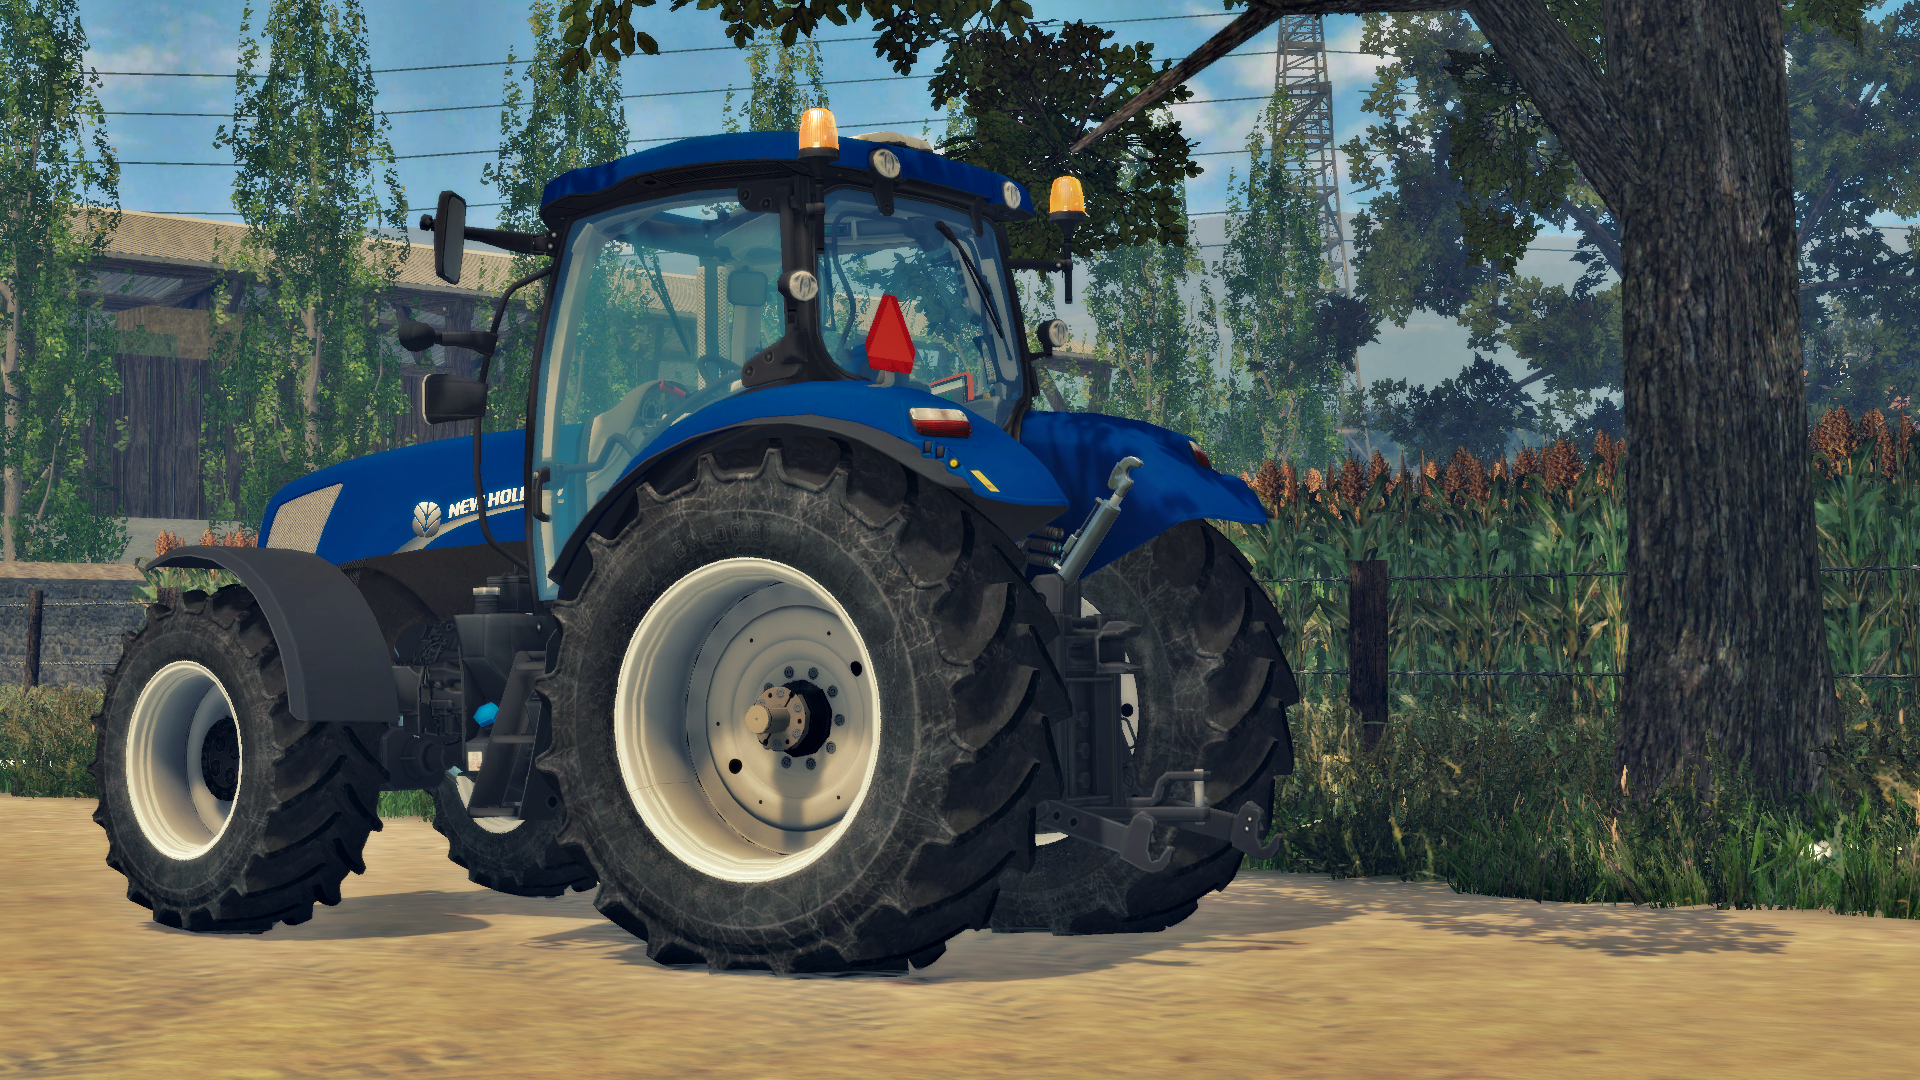 NEW HOLLAND T7170 V2 - Farming simulator 17 mods | Farming simulator ...